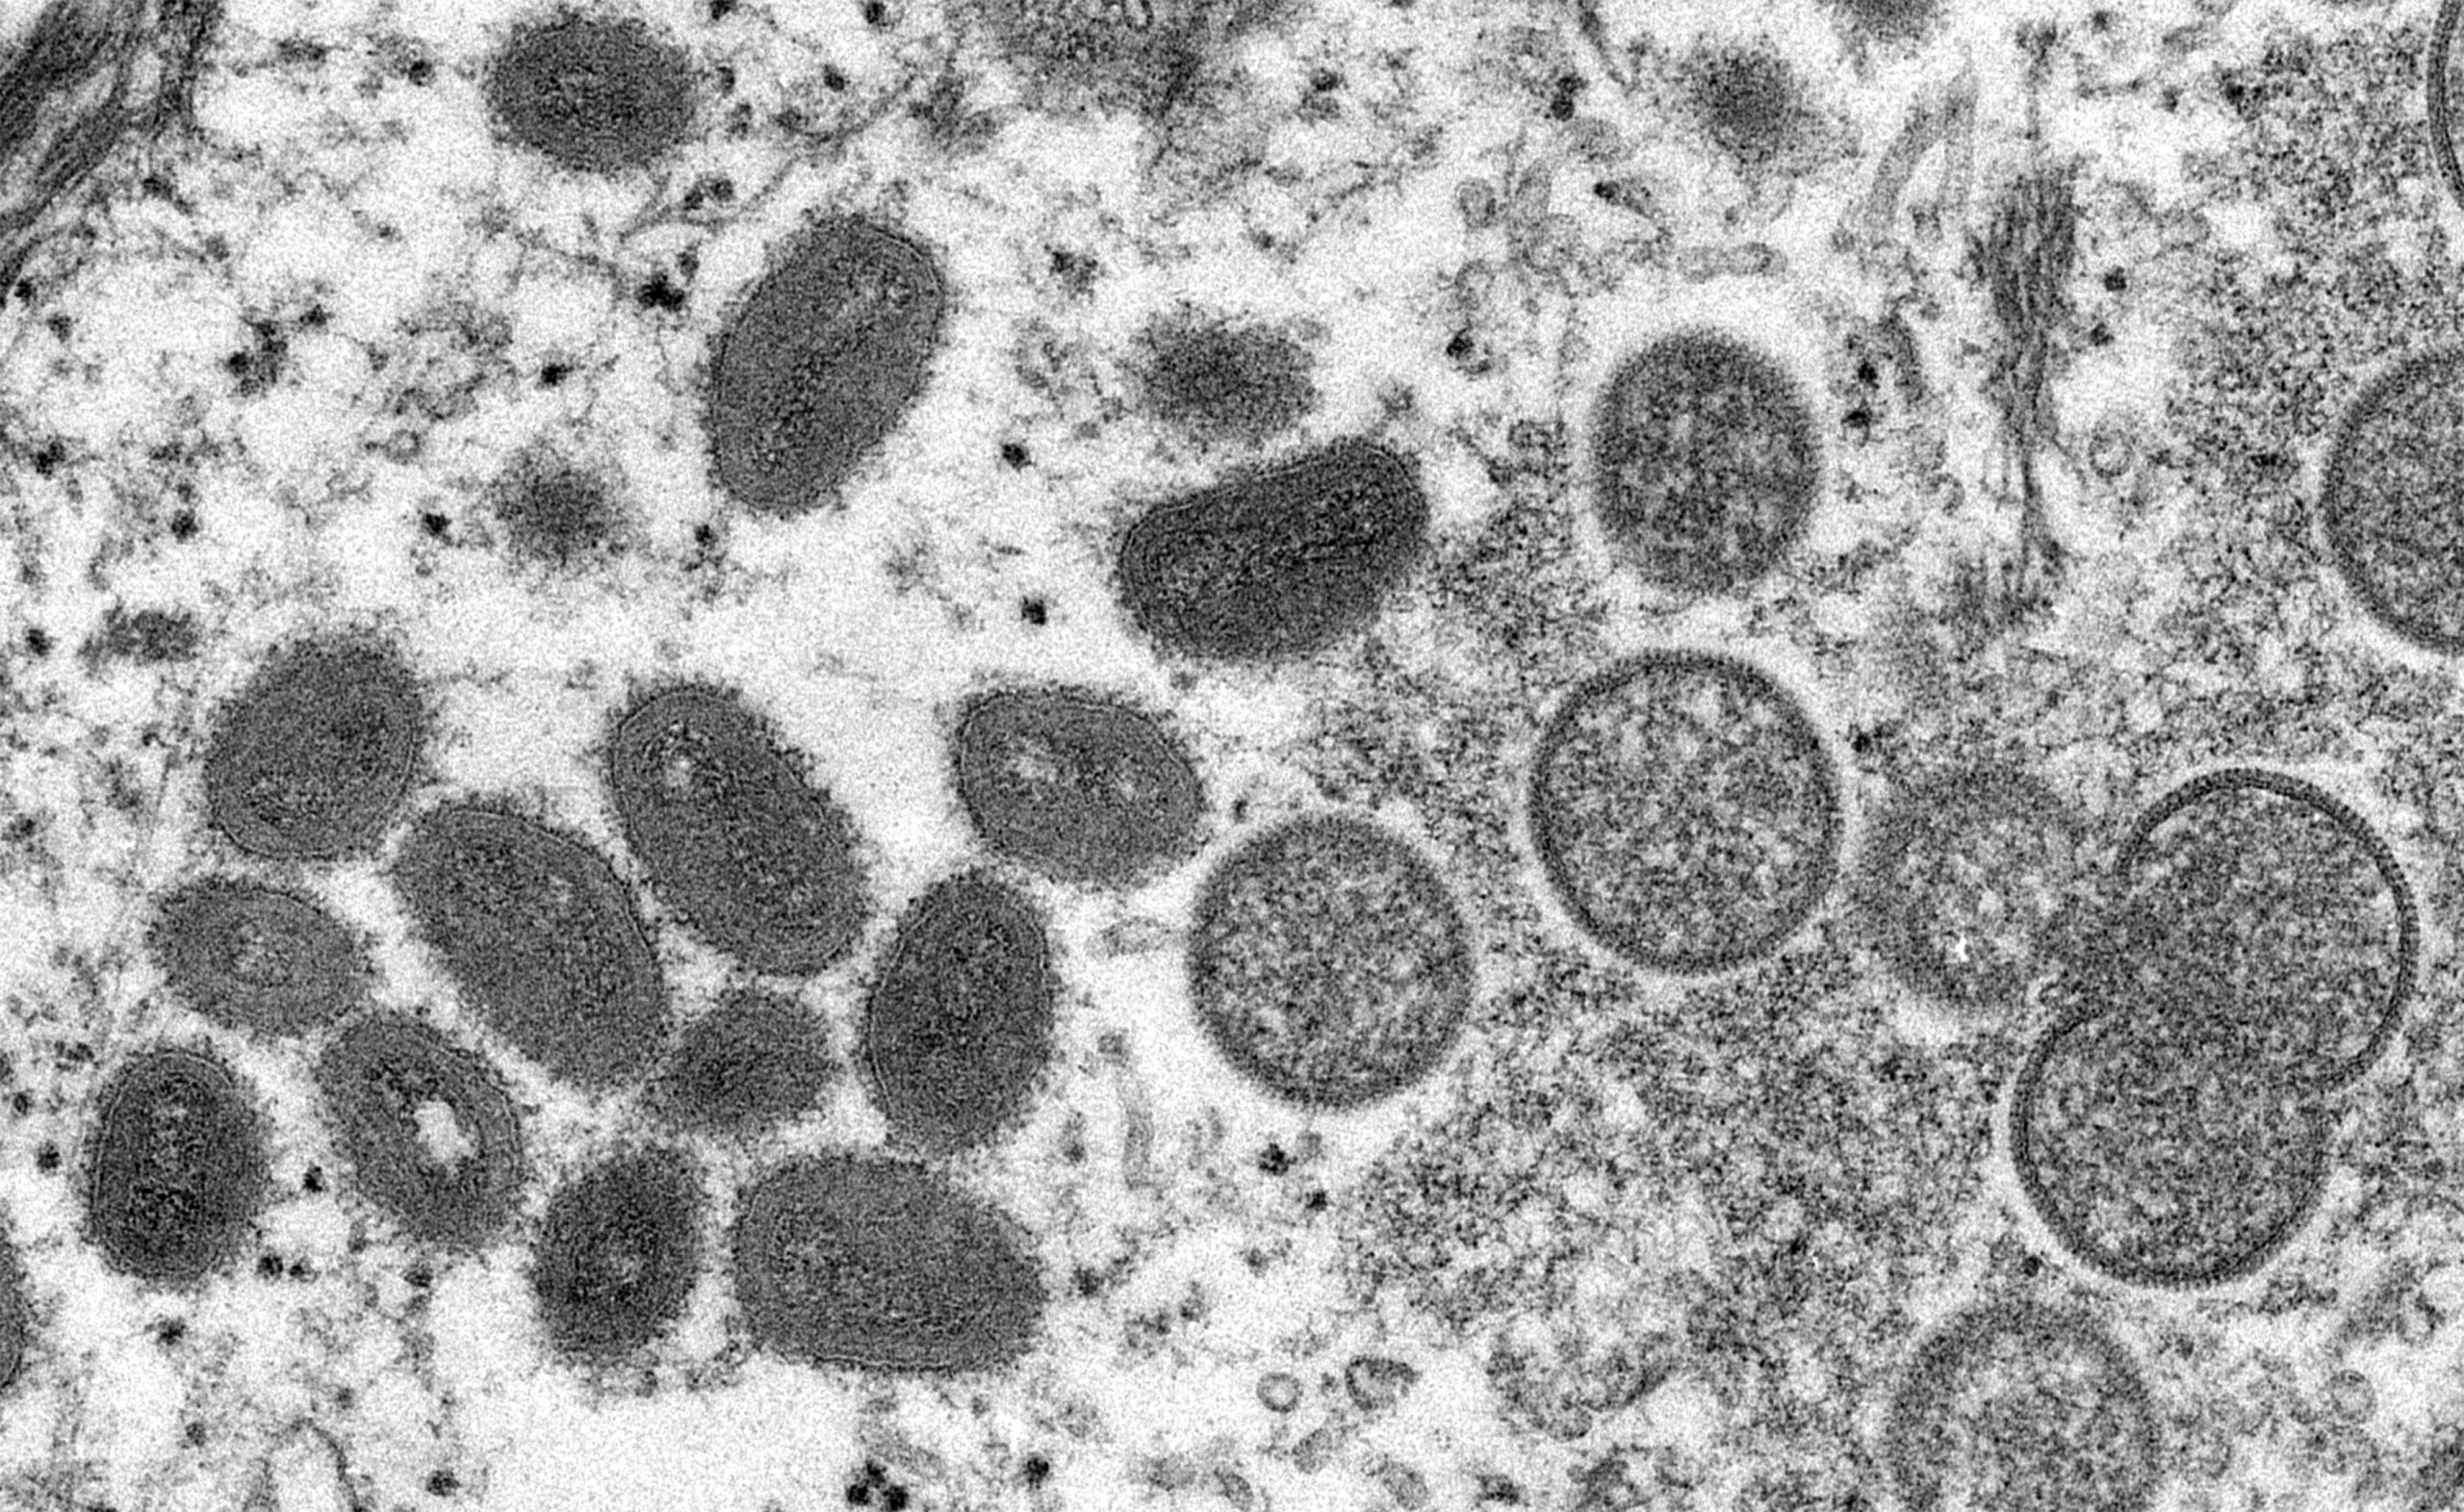 Erste vollständige DNA-Sequenz des Affenpockenvirus in der Schweiz